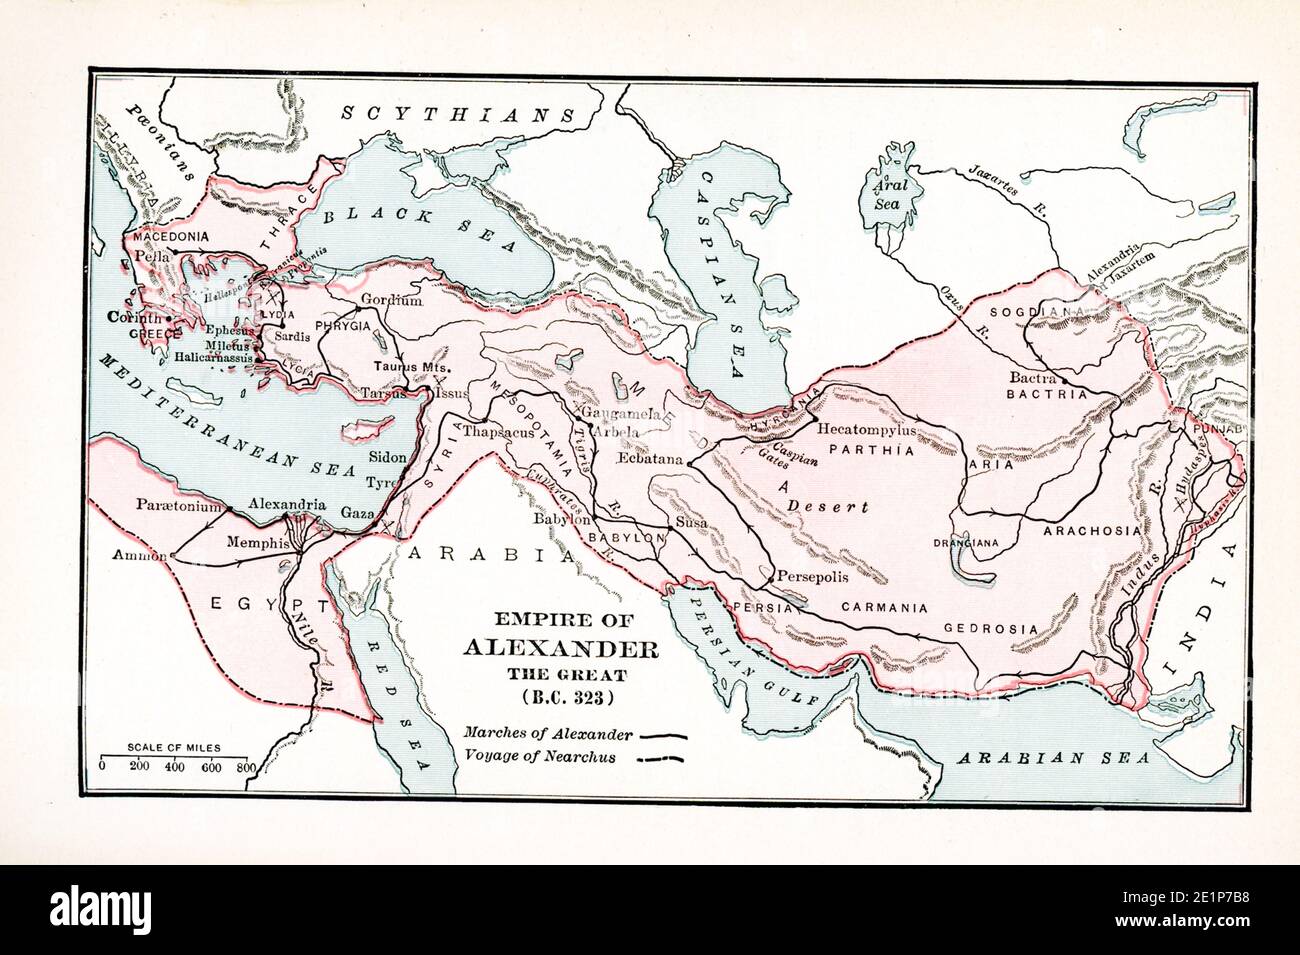 Questa mappa mostra l'in Impero di Alessandro il Grande BC 323. La leggenda è: Marche di Alessandro - linea nera piena; Marche di Nearchus- linea nera rotta Foto Stock